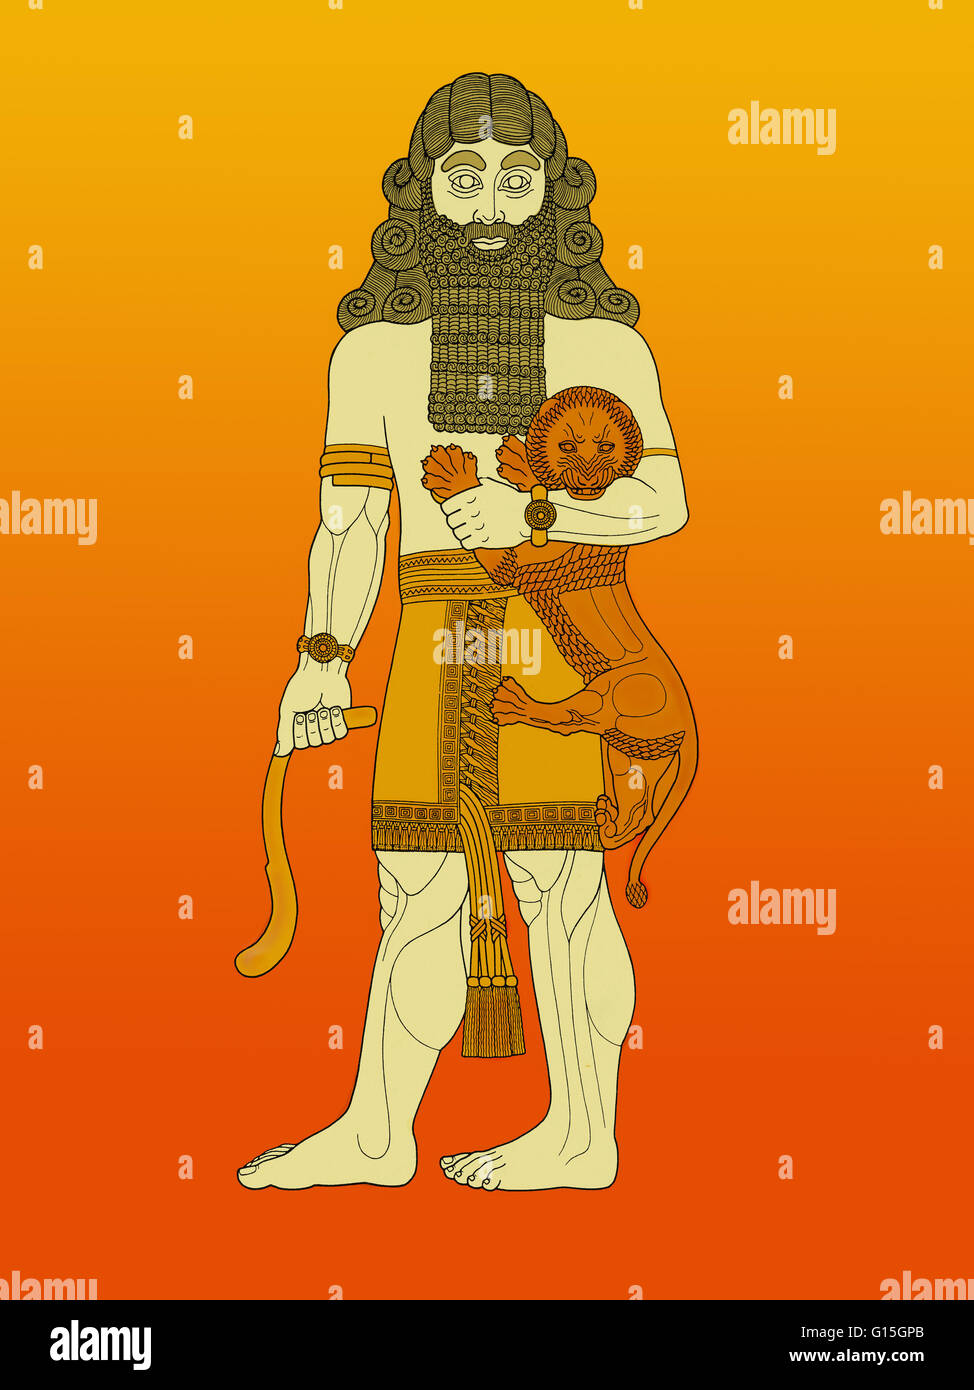 Una figura di un eroe addomesticare un leone, storicamente presi da una rappresentazione di Gilgamesh, re della antica città sumera Uruk, e considerato un semidio nella mitologia della Mesopotamia. Immagine derivata da un ottavo secolo a.c. sollievo dall'Assiria presente-d Foto Stock